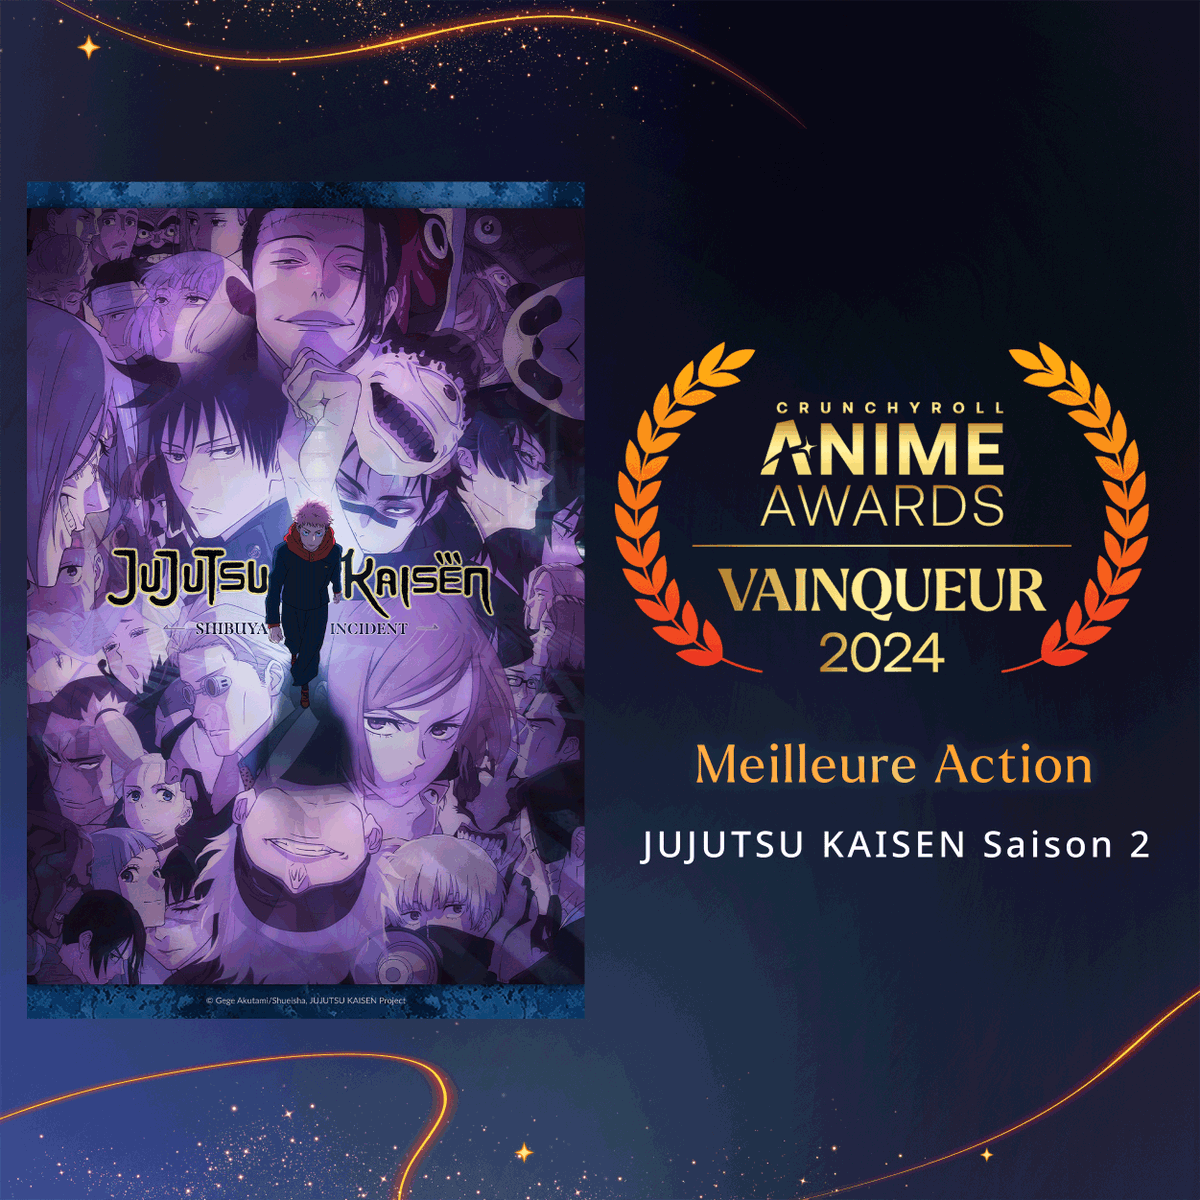 'Sur terre comme ciel, moi seul mérite d'être vénéré.' Jujutsu Kaisen S2 nous a offert des scènes de légende. Félicitations pour l'award de la Meilleure Action ! 🏆 #AnimeAwards